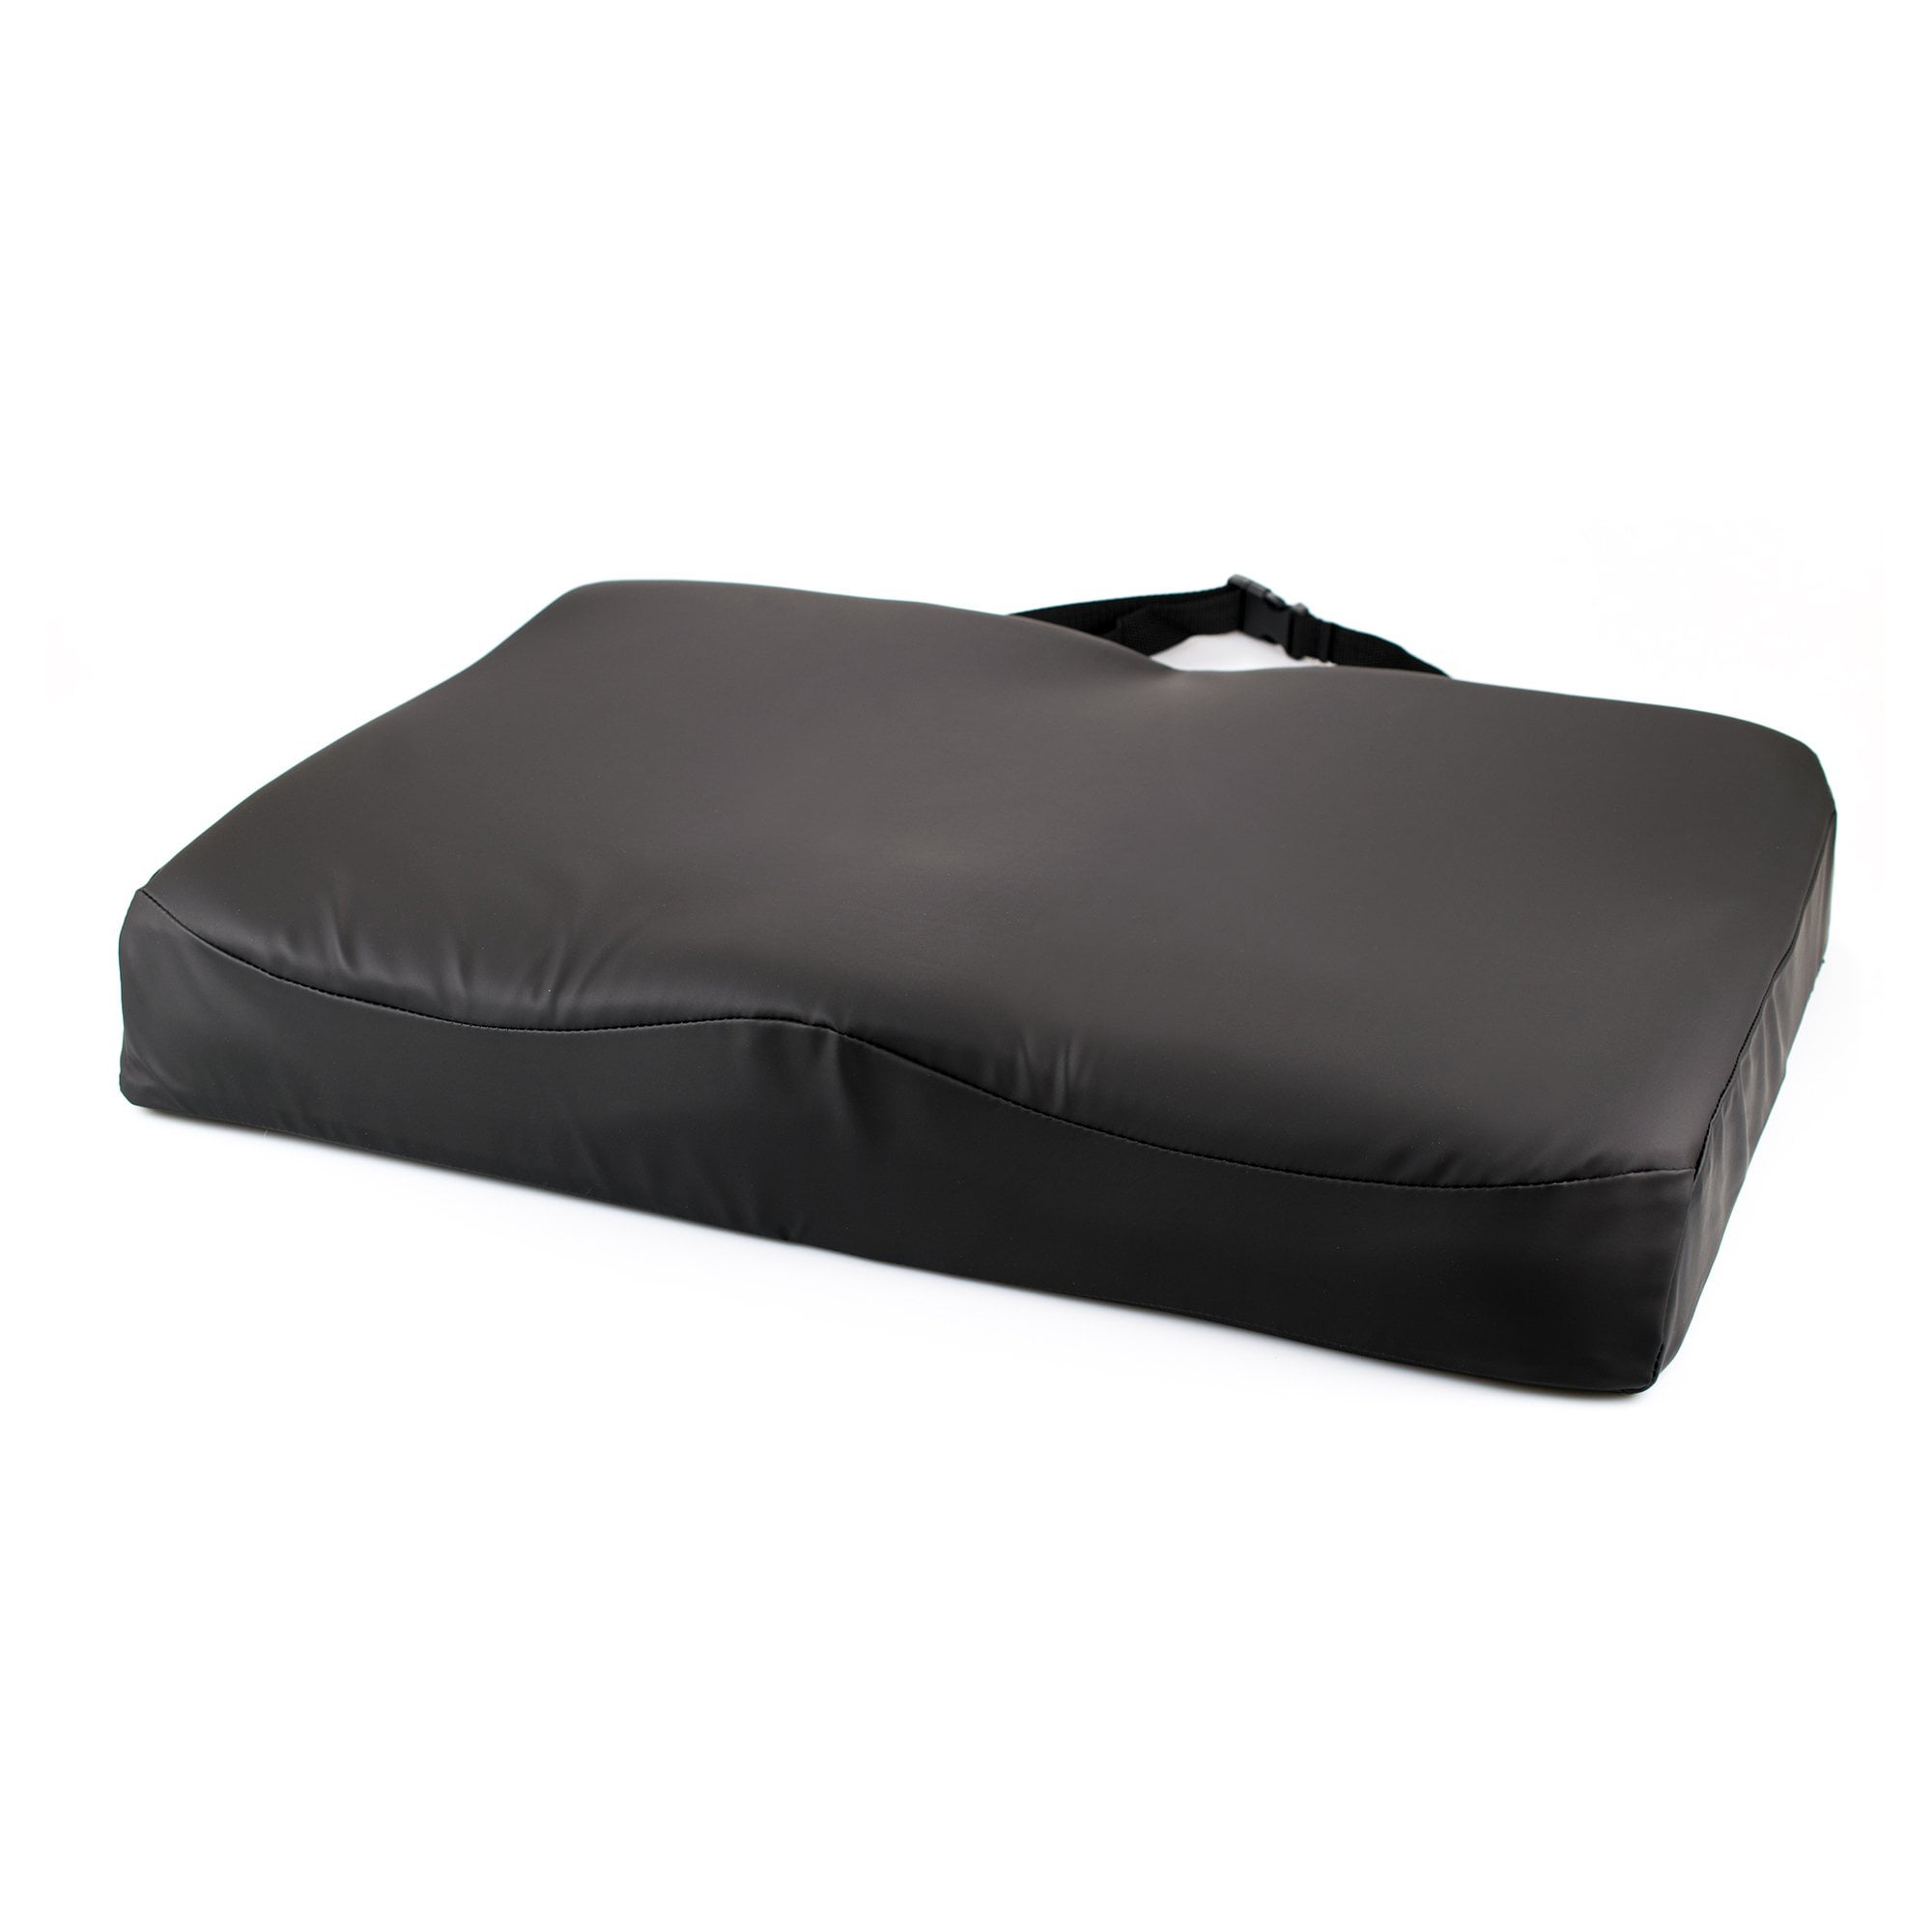 McKesson Bariatric Premium Molded Foam Seat Cushion .